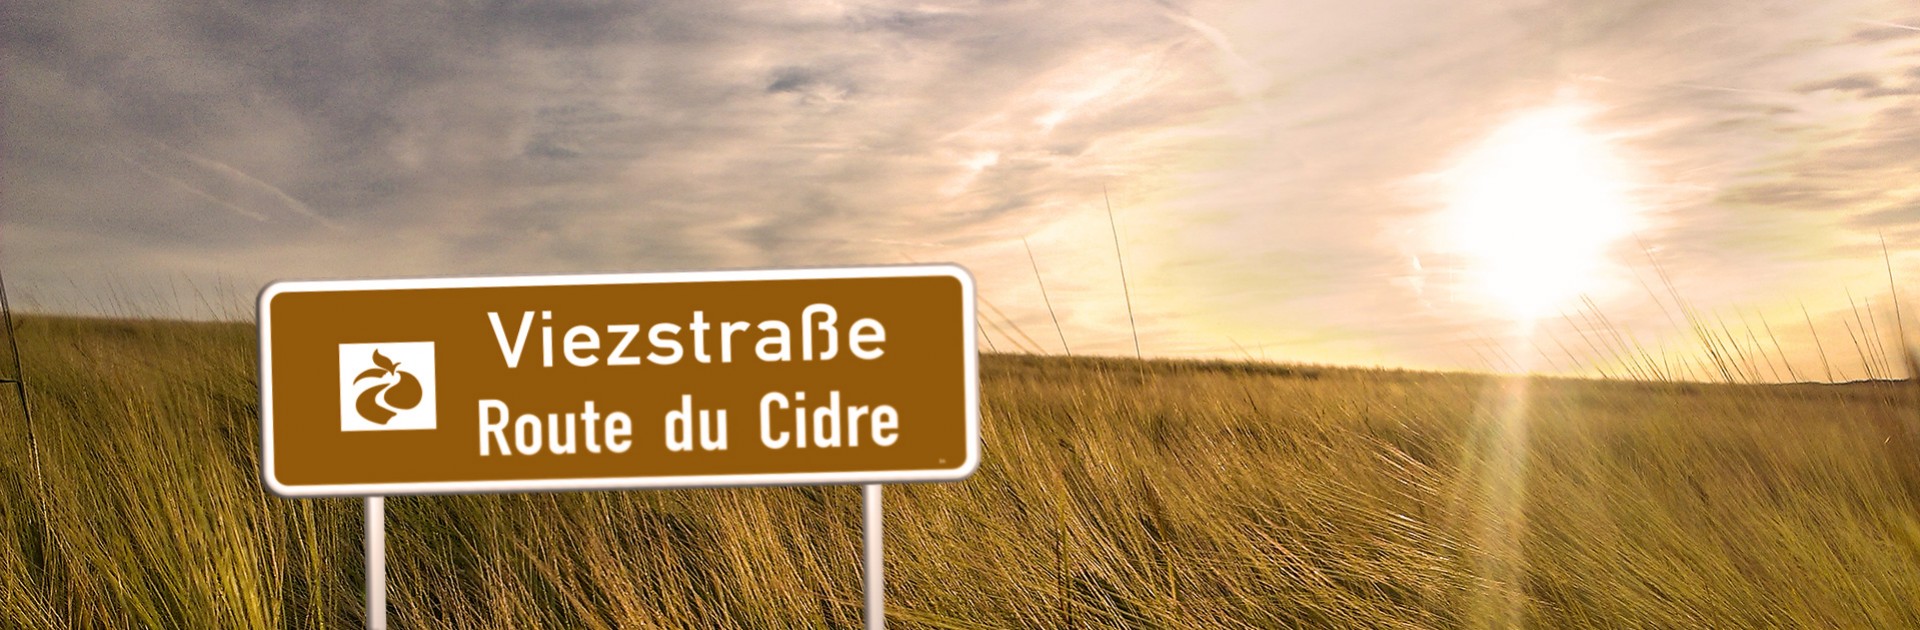 Viezstrasse - Cider Route